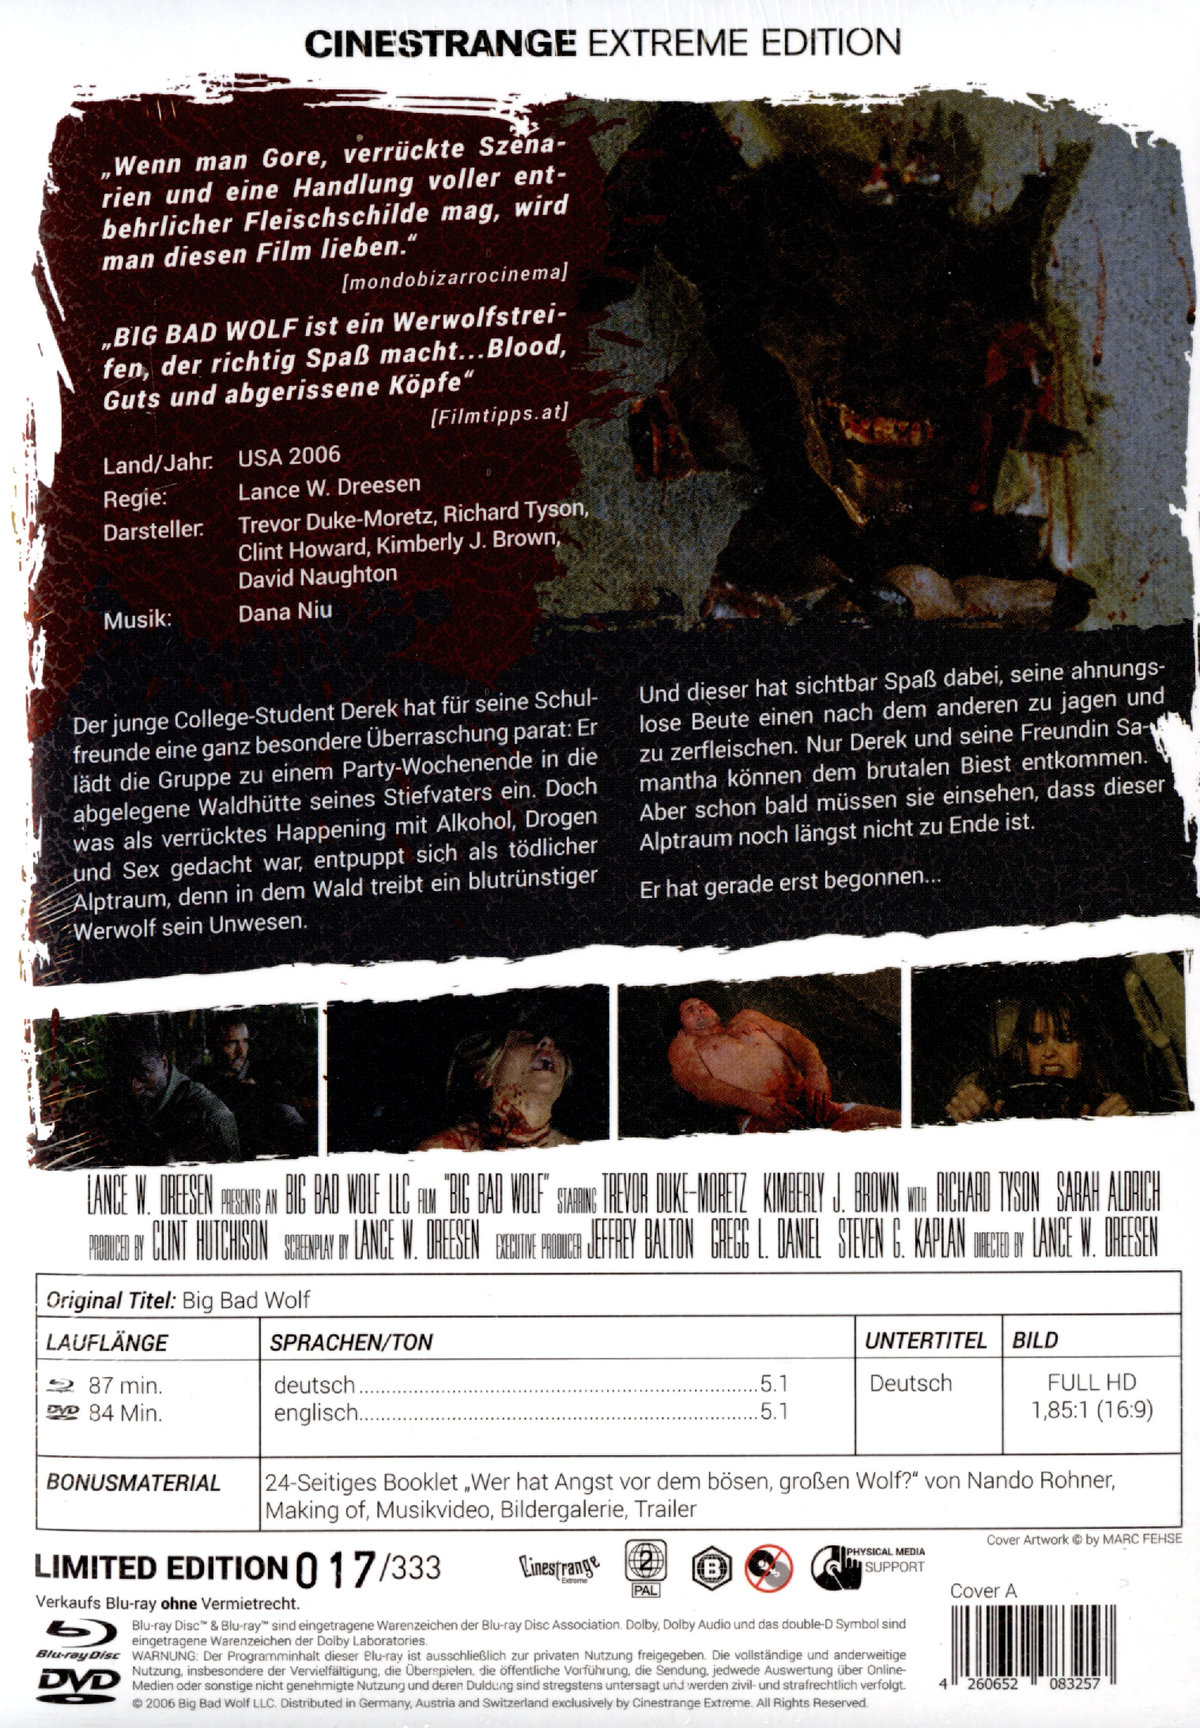 Big Bad Wolf - Uncut Mediabook Edition  (DVD+blu-ray) (A)